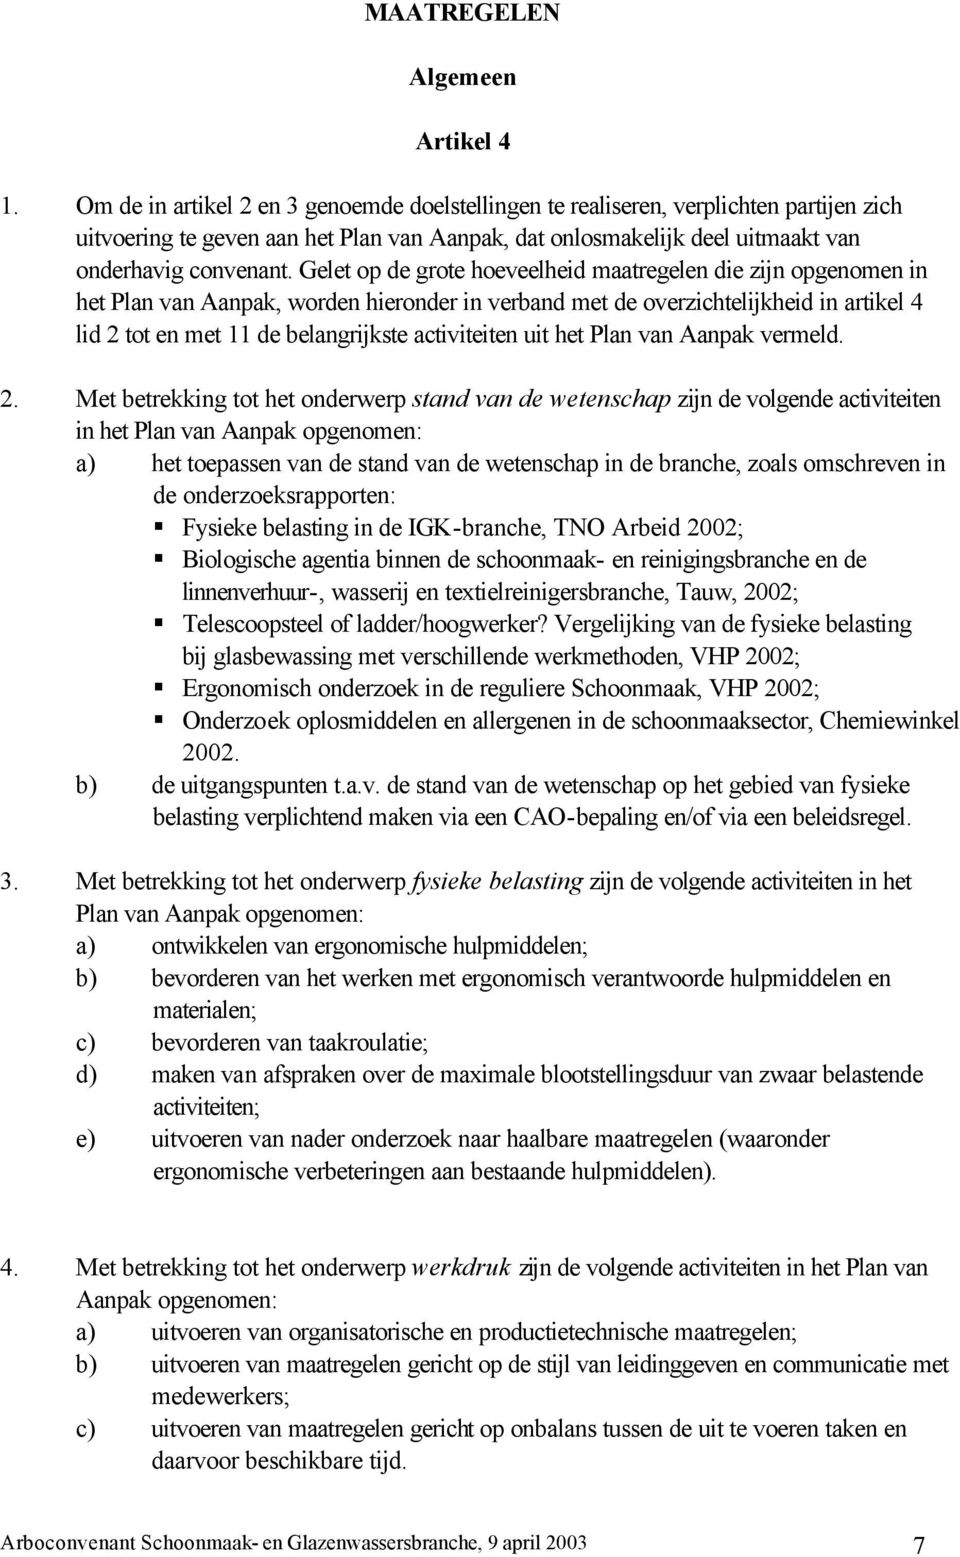 Gelet op de grote hoeveelheid maatregelen die zijn opgenomen in het Plan van Aanpak, worden hieronder in verband met de overzichtelijkheid in artikel 4 lid 2 tot en met 11 de belangrijkste